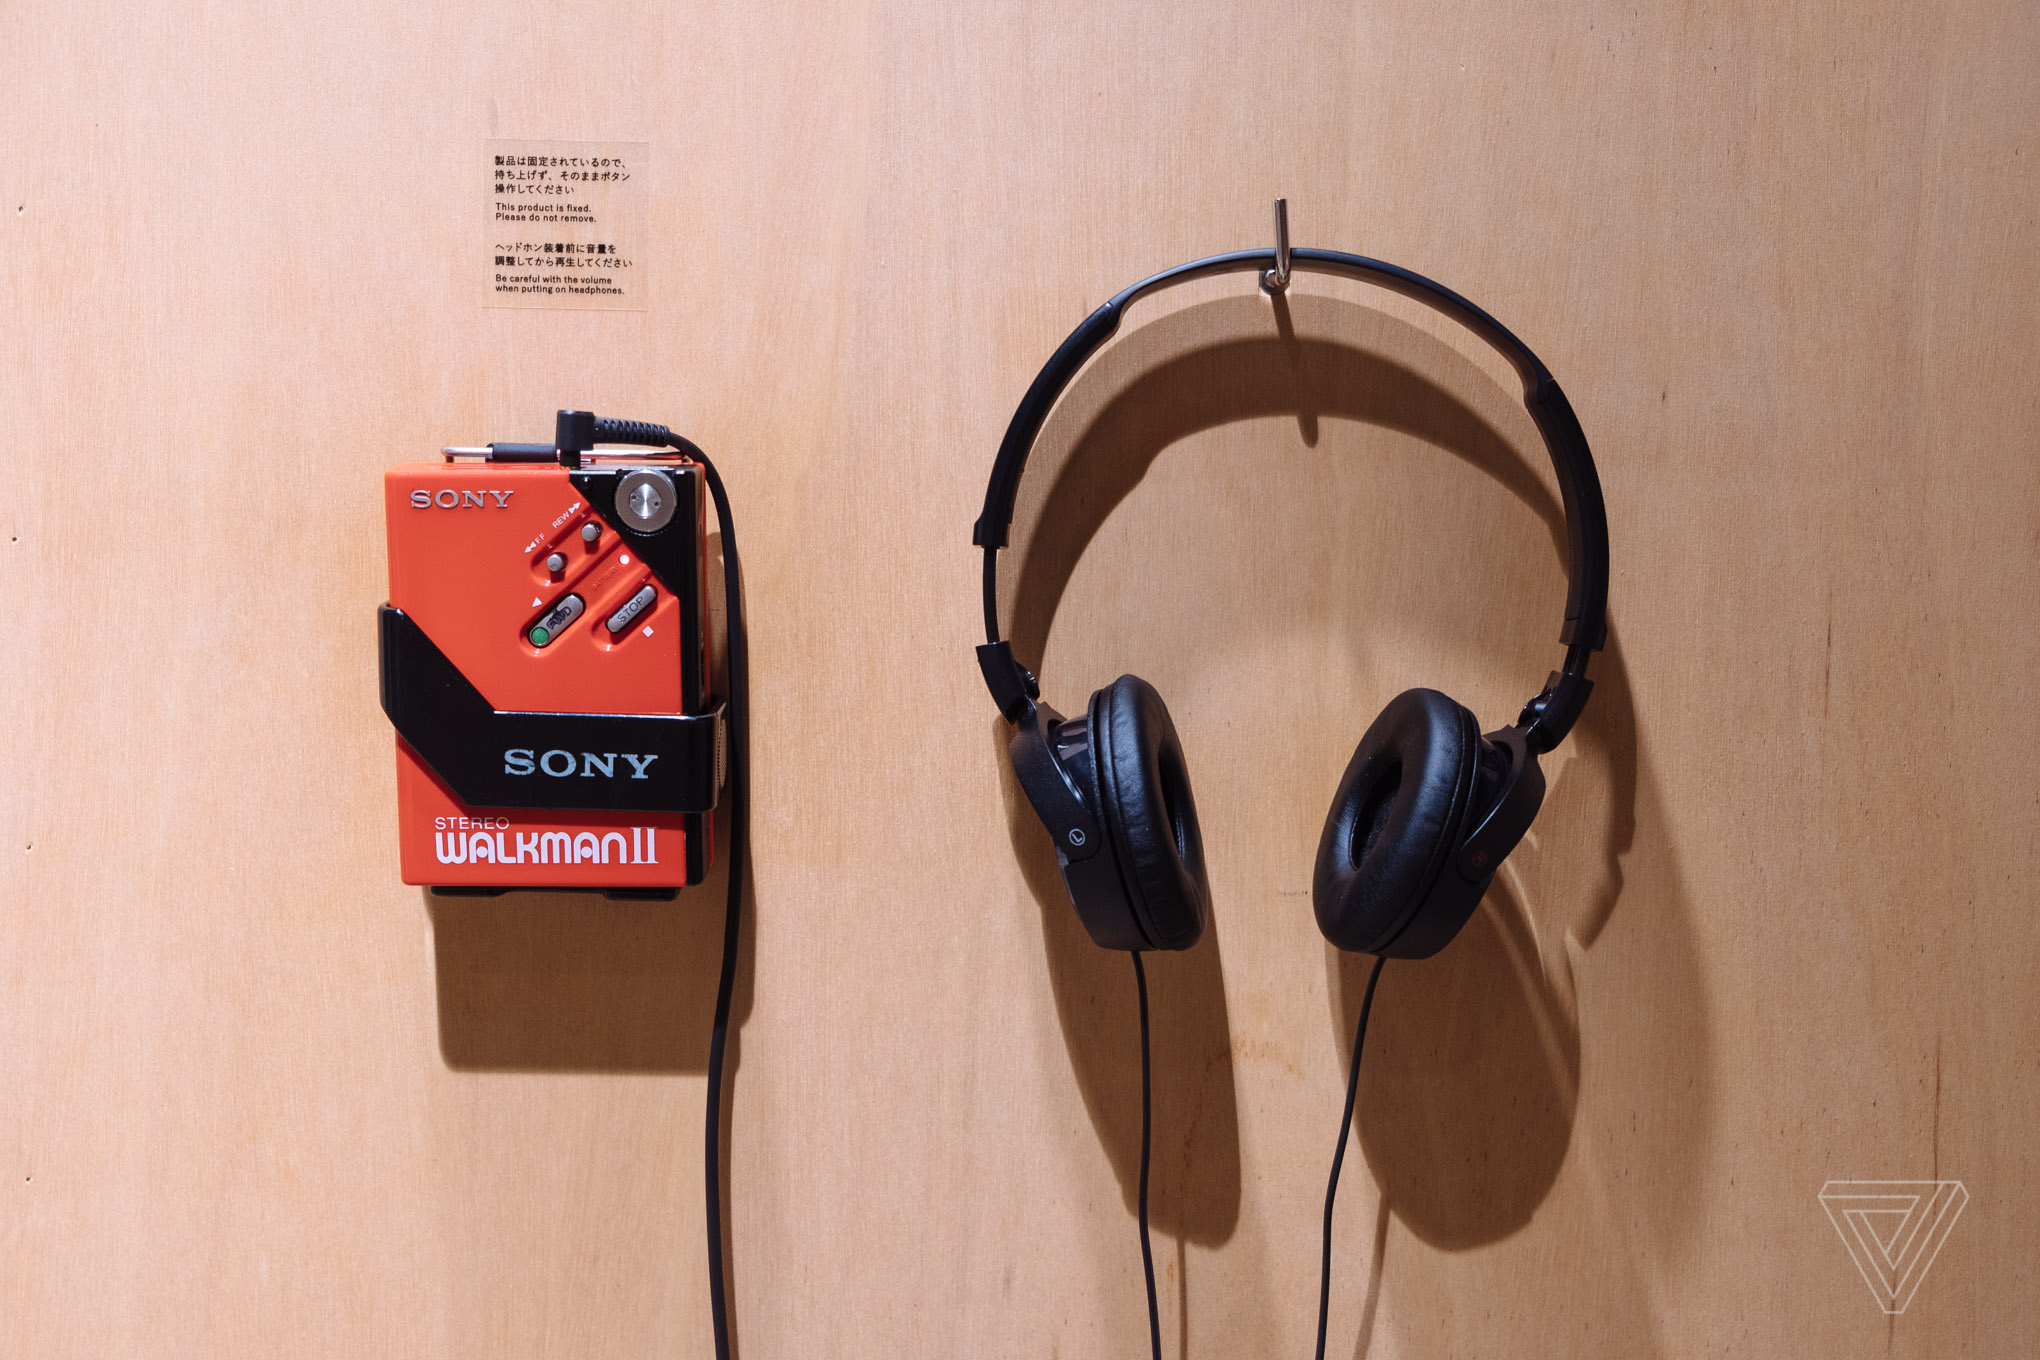 Cùng tham quan Walkman in the Park - Con đường trưng bày hơn 200 mẫu Walkman trong suốt 40 năm kiến tạo dòng máy nghe nhạc cầm tay